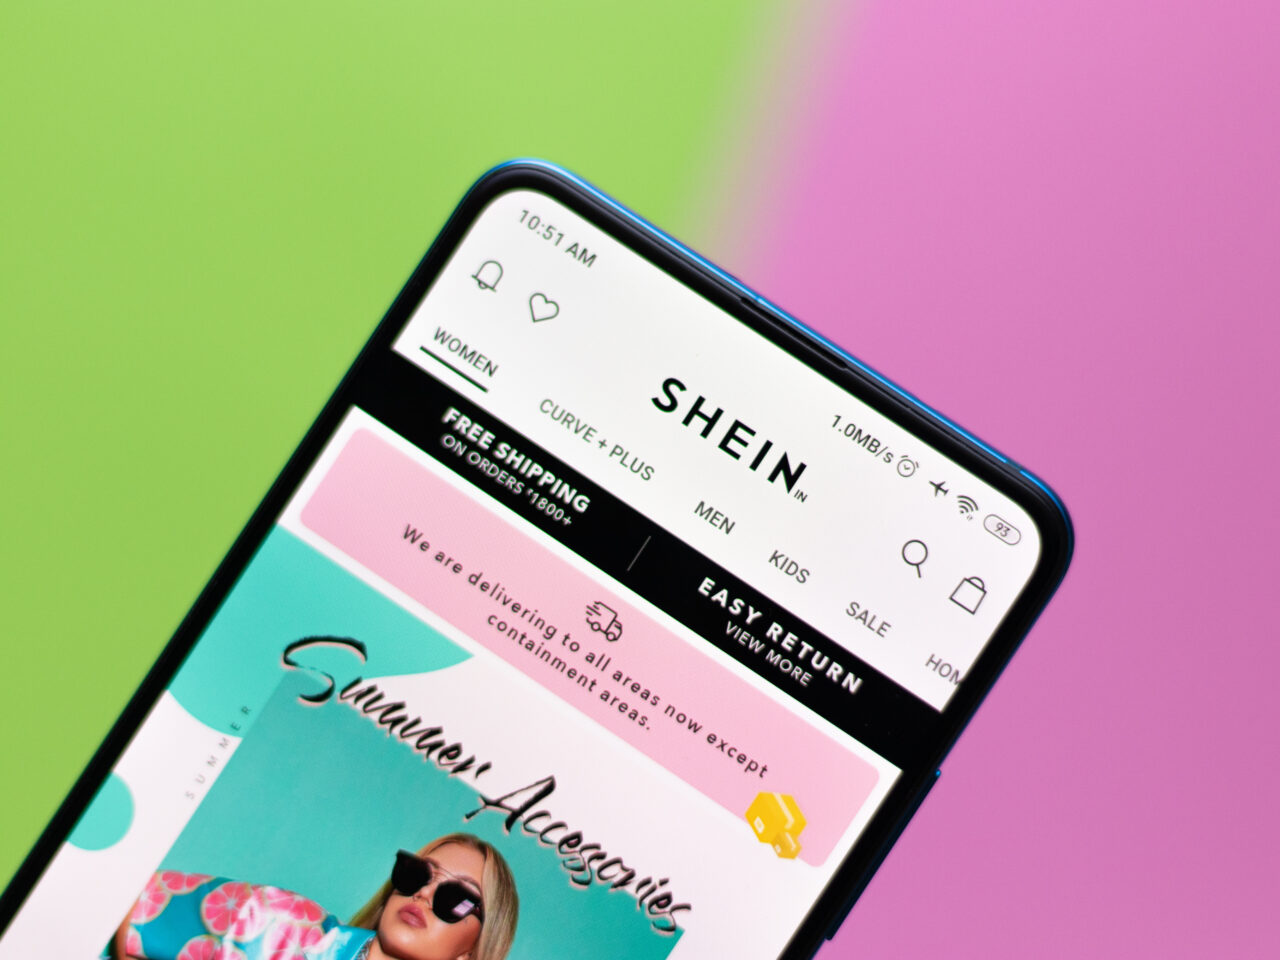 Shein Kody rabatowe. Smartfon z otwartą aplikacją sklepu SHEIN na ekranie, wyświetlającym reklamę akcesoriów letnich z ikoną kobiety w okularach przeciwsłonecznych na kolorowym tle zielono-różowym.